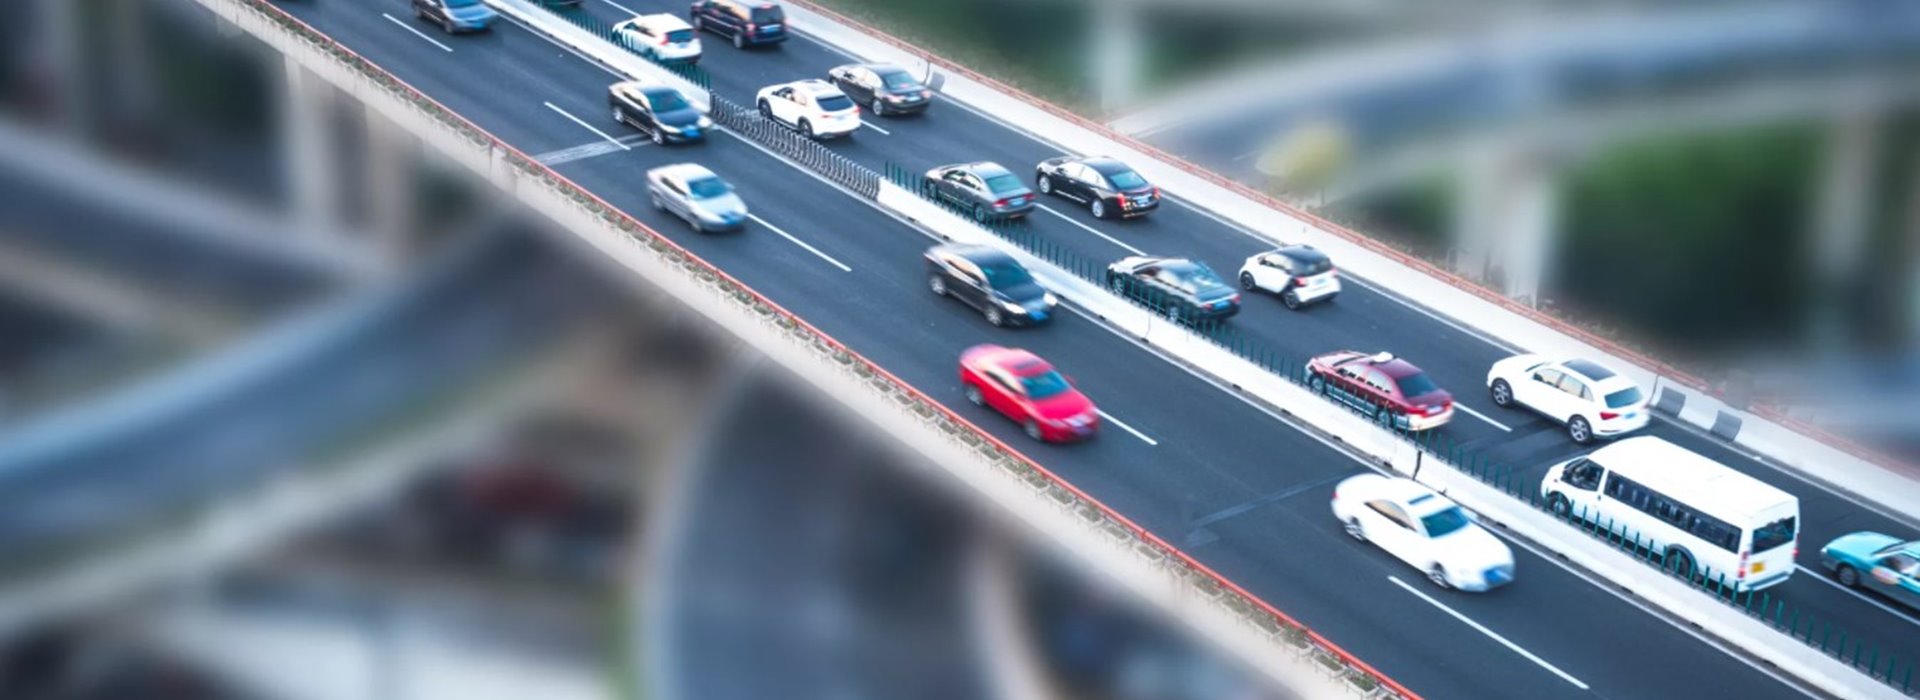 Обеспечение безопасности дорожного движения: стратегии, направления, мировая практика